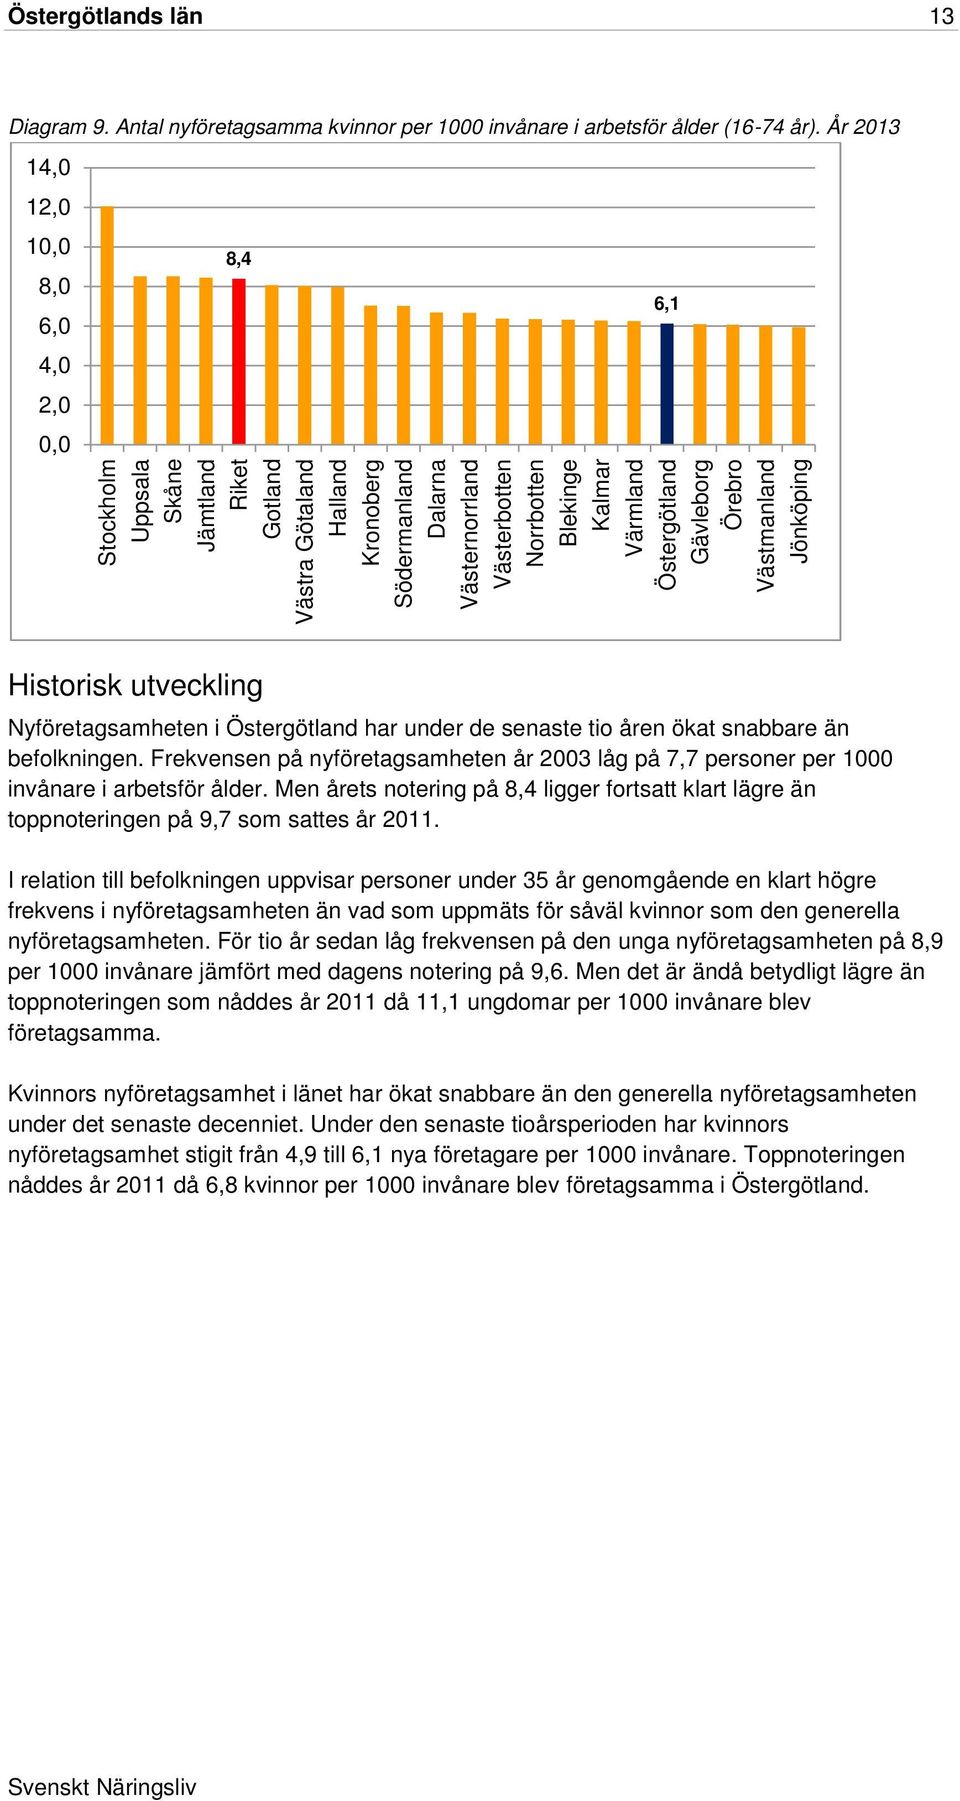 Kalmar Värmland Östergötland Gävleborg Örebro Västmanland Jönköping 6,1 Historisk utveckling Nyföretagsamheten i Östergötland har under de senaste tio åren ökat snabbare än befolkningen.